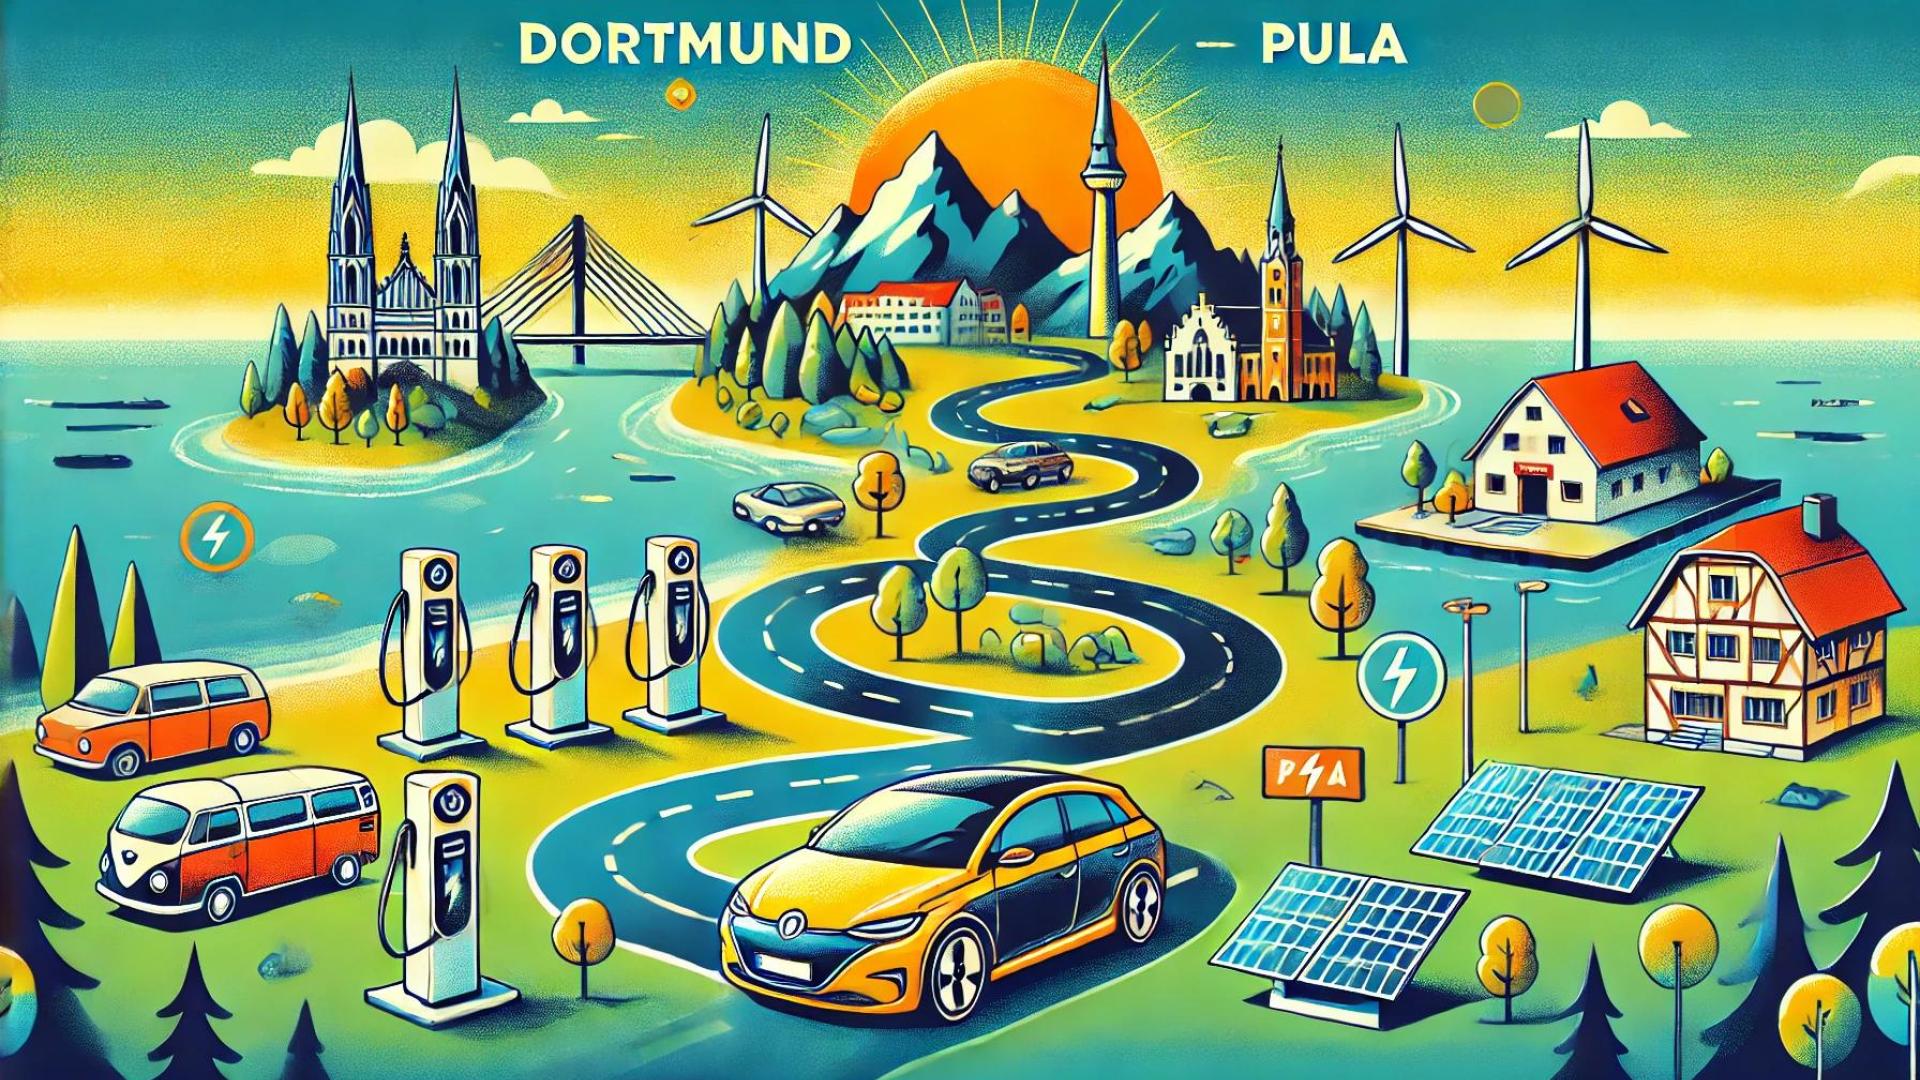 Reise von Dortmund nach Pula mit dem Elektrofahrzeug